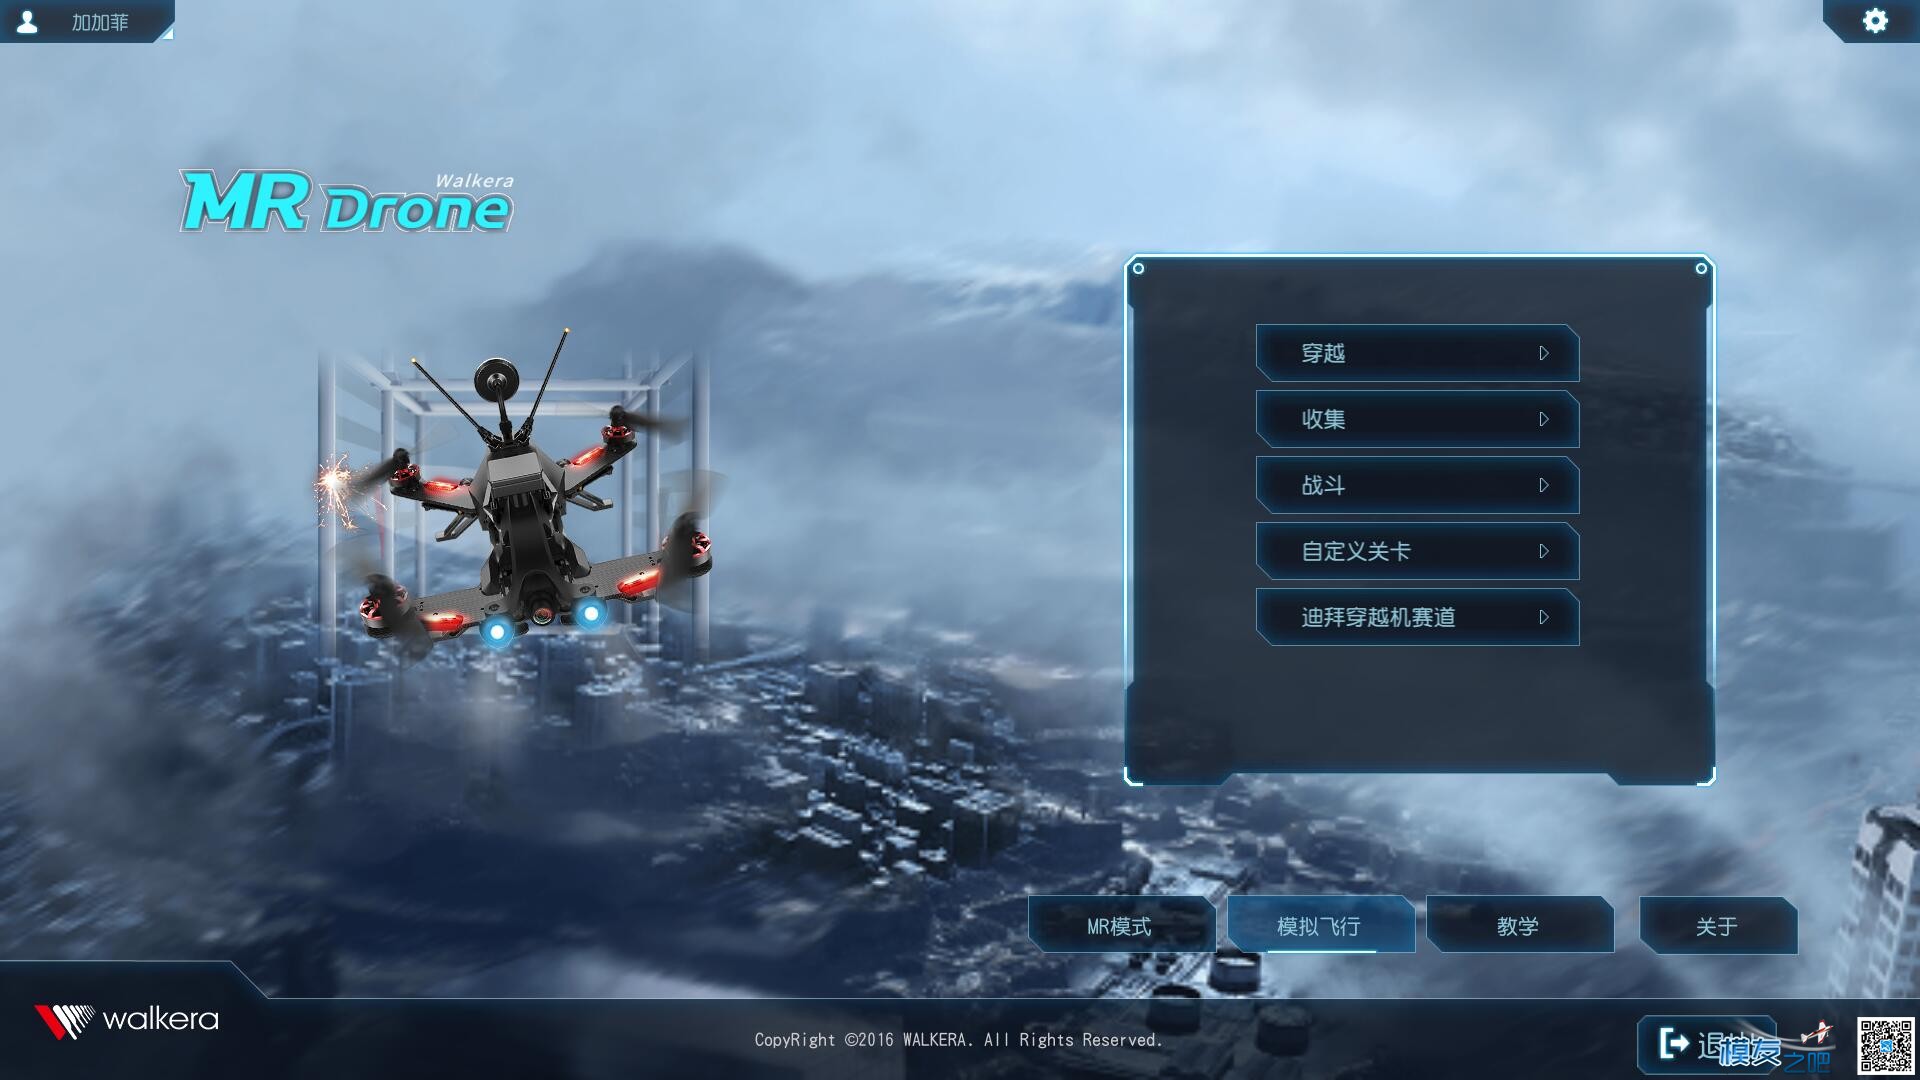 华科尔MR Drone穿越机模拟器评测-----By 加加菲 加密狗,模拟器,NVIDIA,遥控器,文件夹 作者:加加菲 1588 